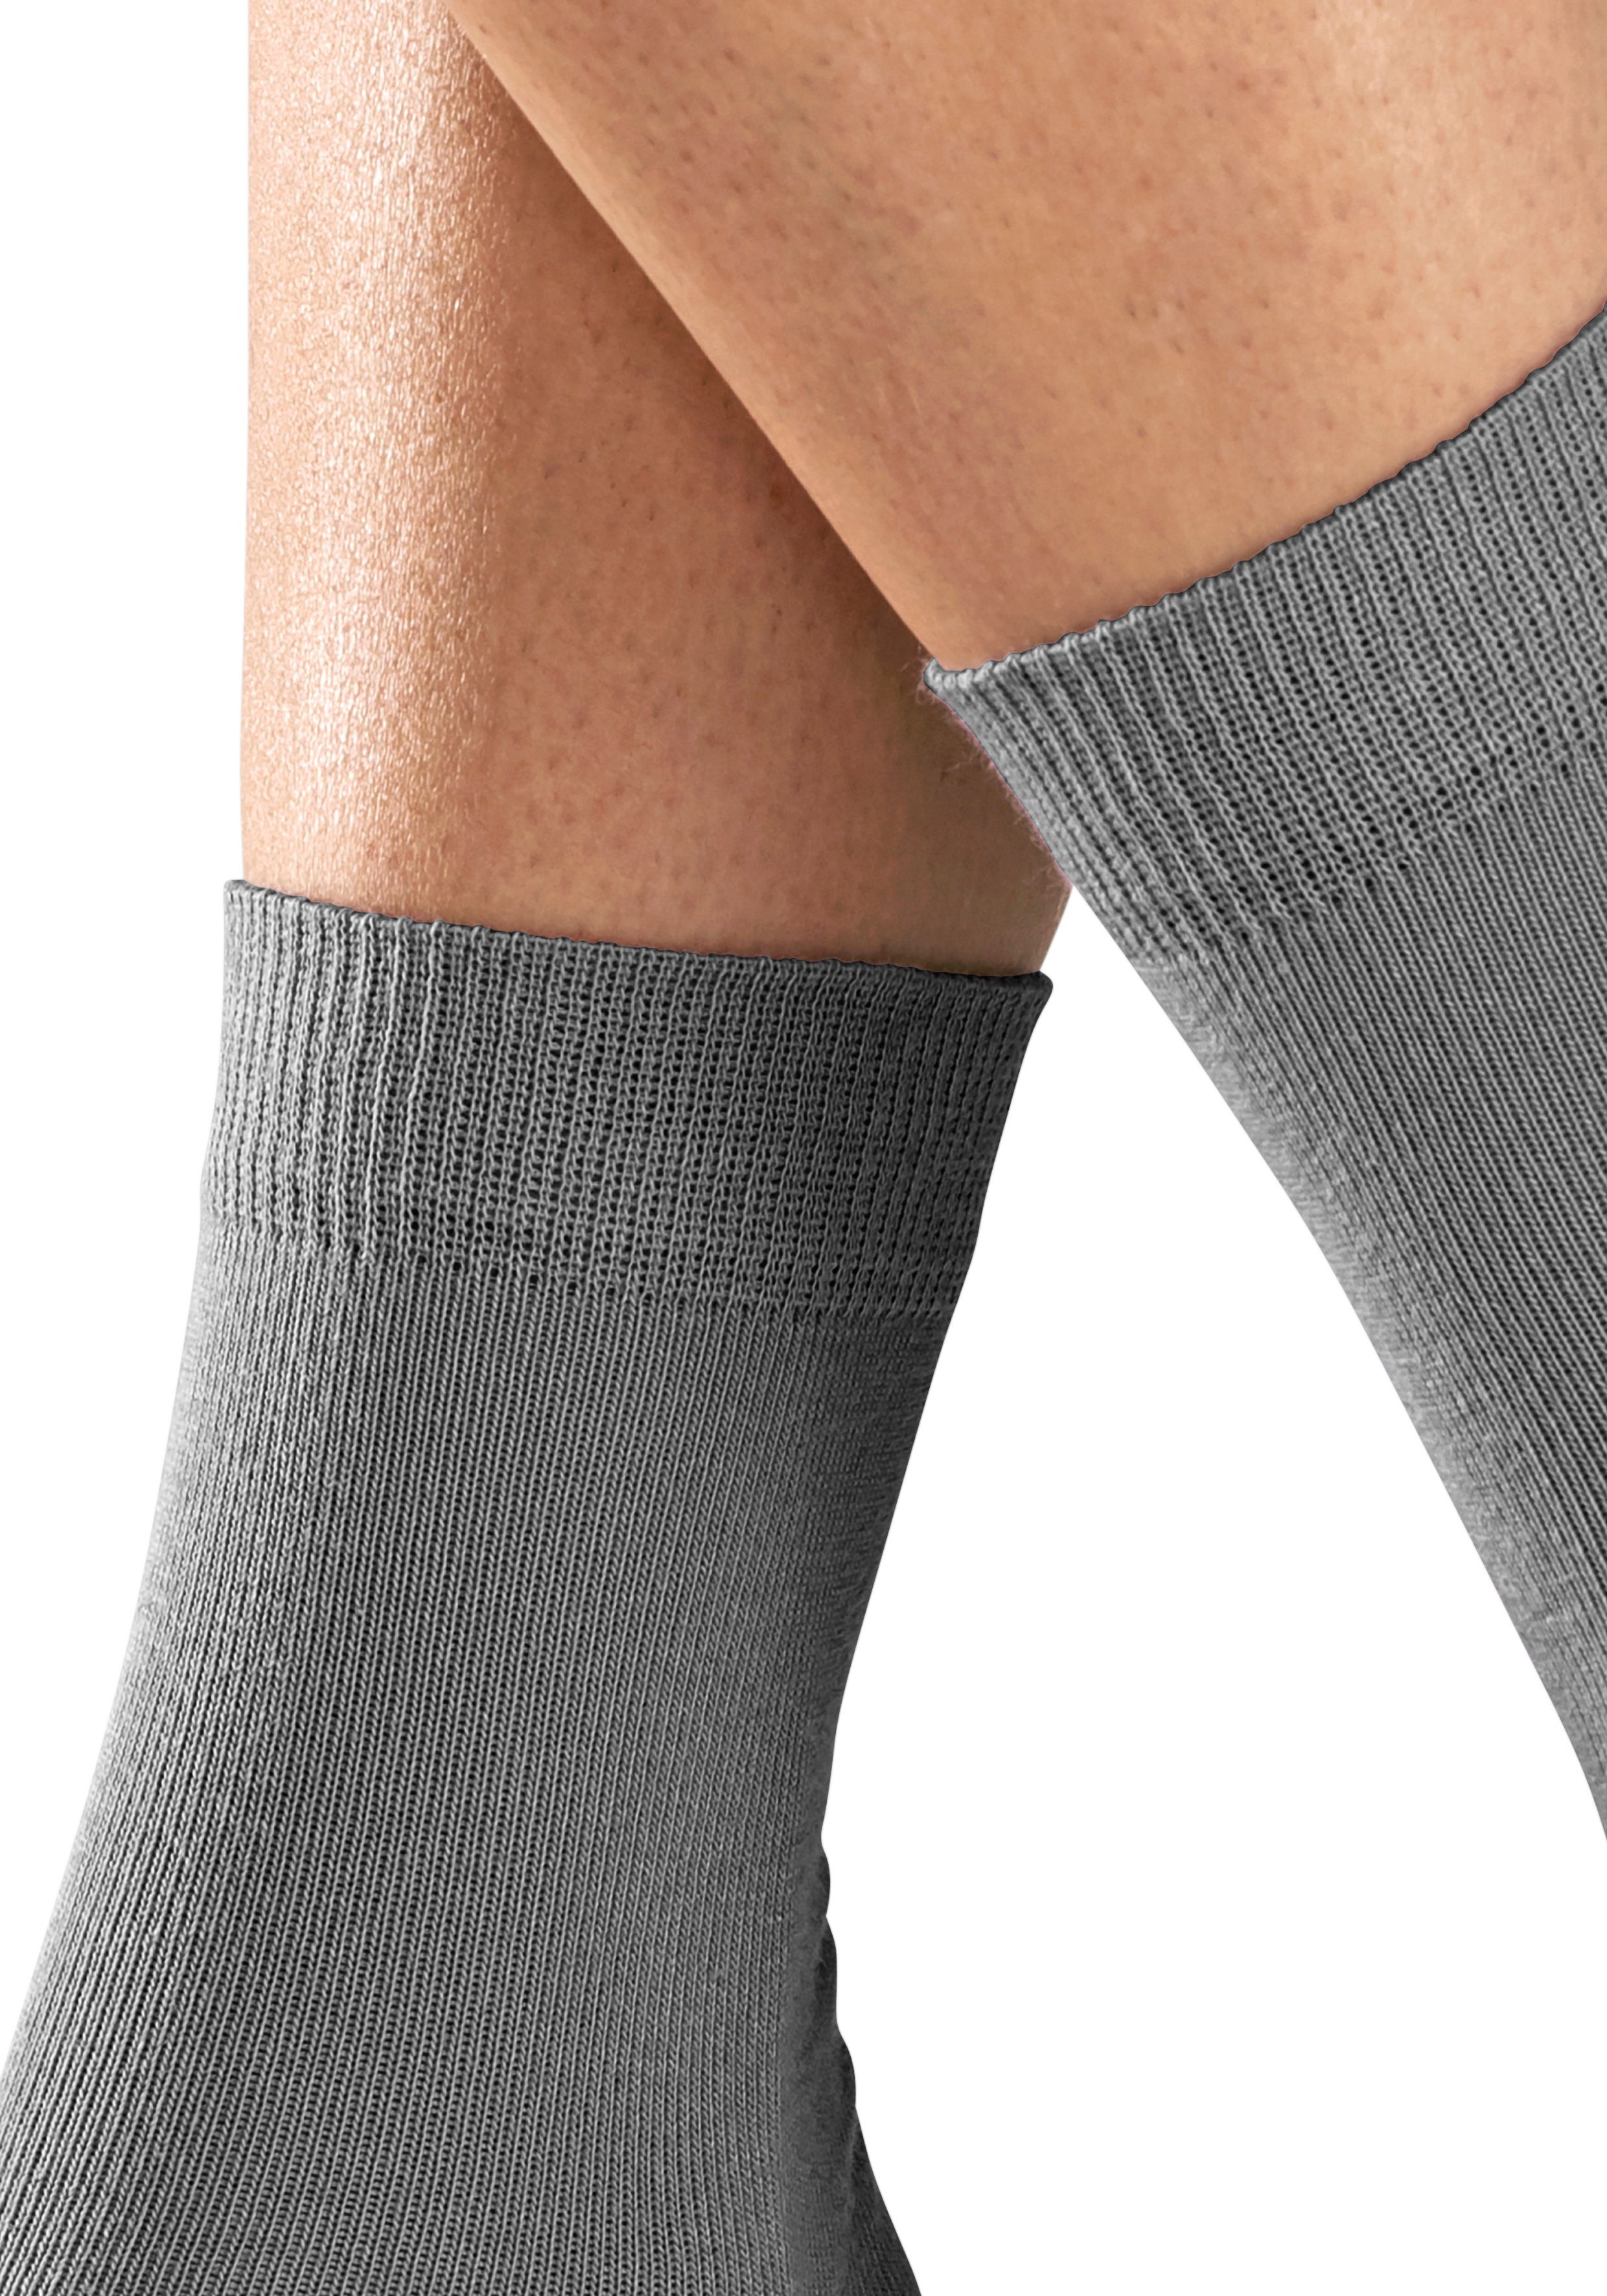 H.I.S Socken 4x grau-schwarz unterschiedlichen Farbzusammenstellungen 4-Paar) in (Set